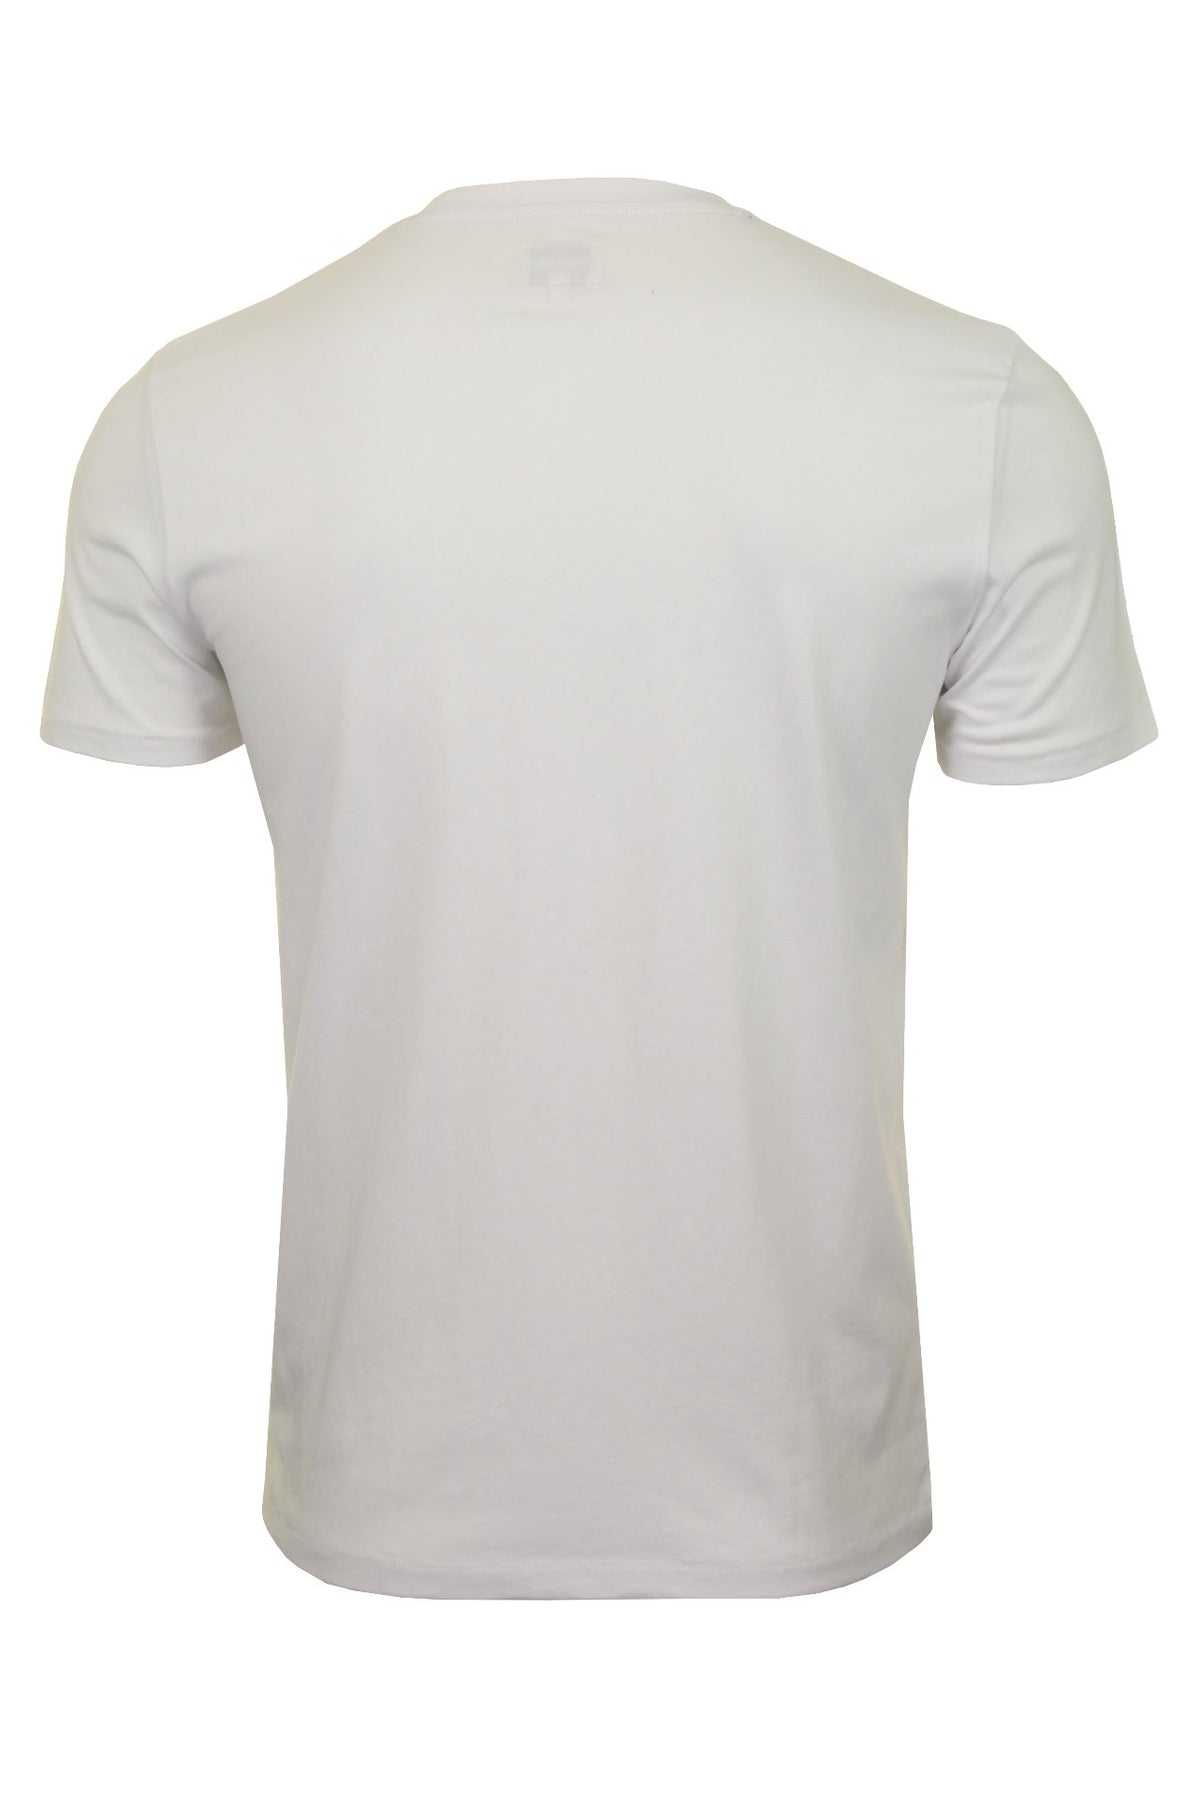 Wrangler Mens T-Shirt 'SS Sign off Tee', 03, W7C07D, White